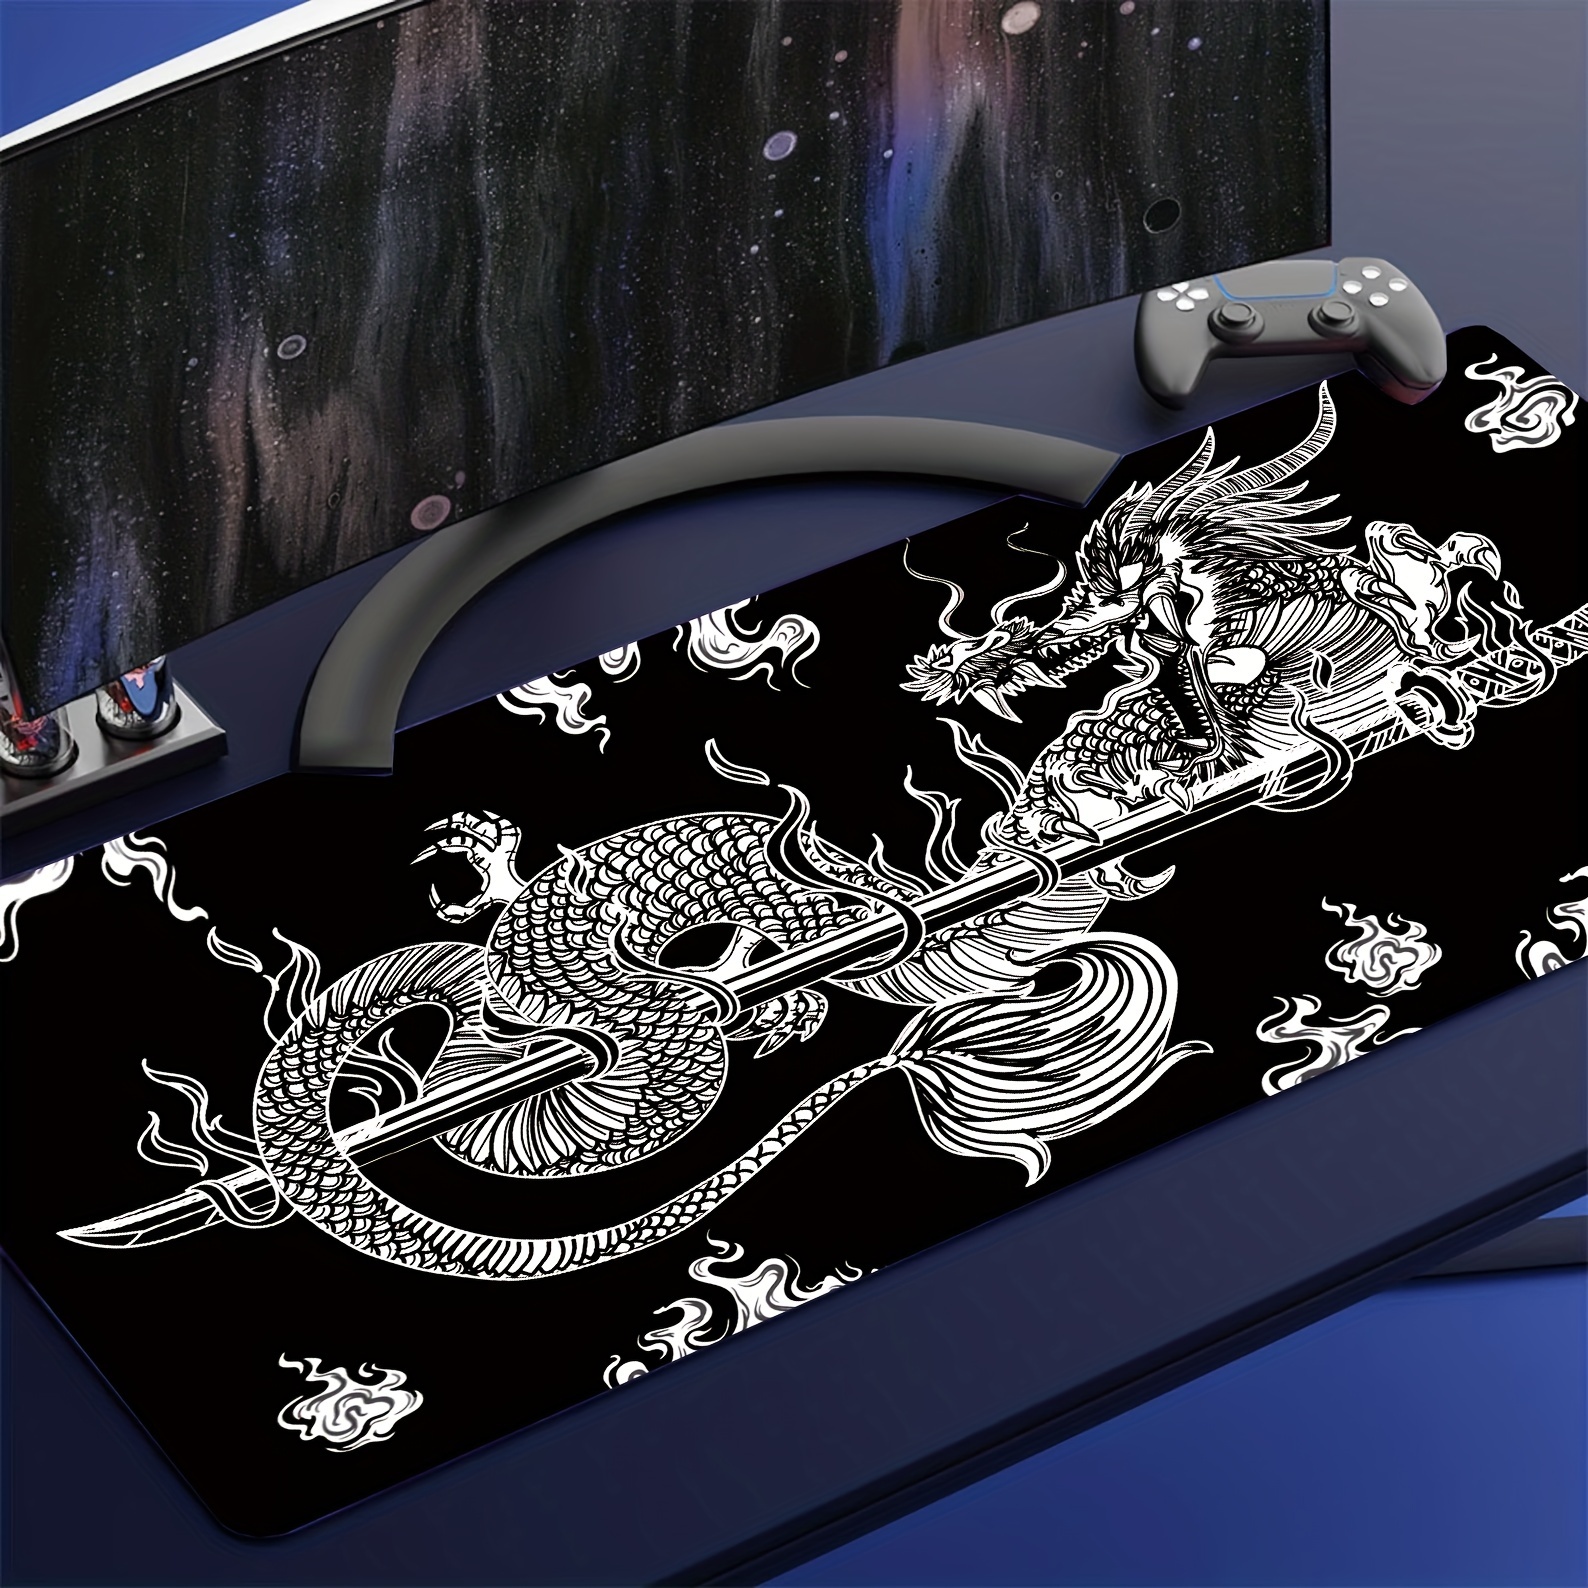 Tapis de souris japonais noir avec vague de mer abstraite - 80 x 30 cm -  Texture vague de mer - Base en caoutchouc antidérapante - Grand tapis de